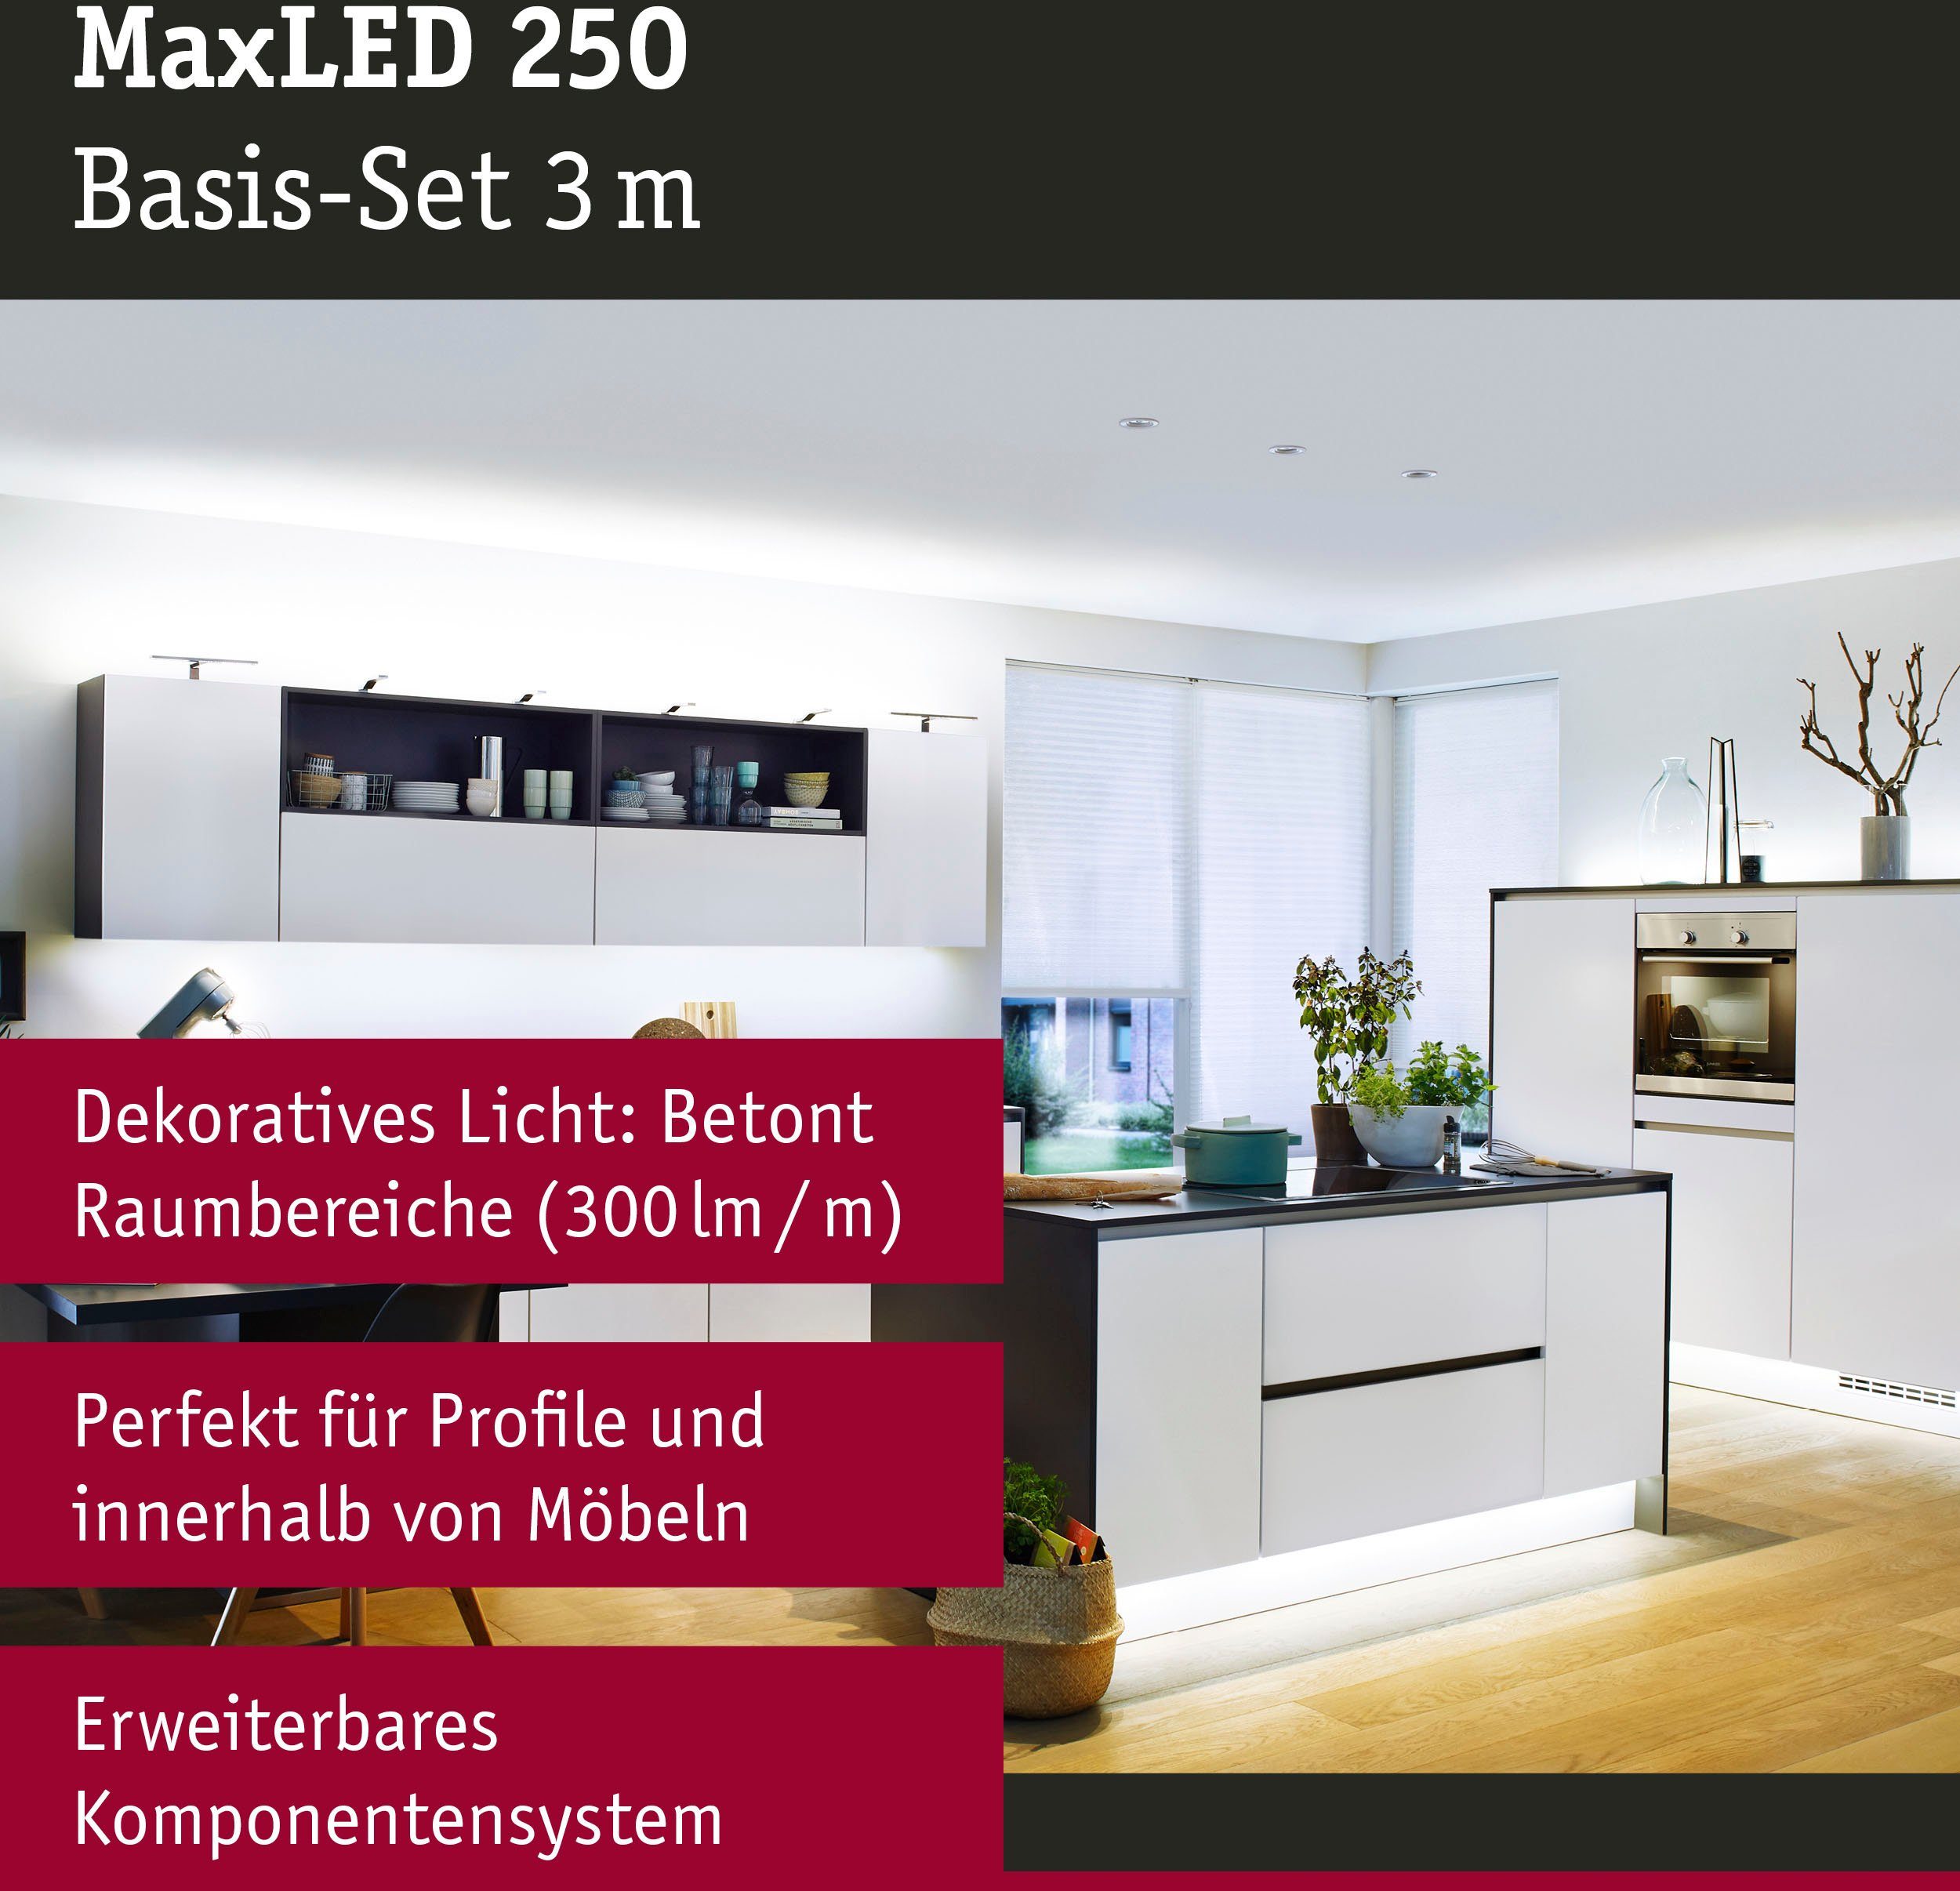 Paulmann LED Stripe Basisset 250 1-flammig unbeschichtet MaxLED 3m Tageslichtweiß